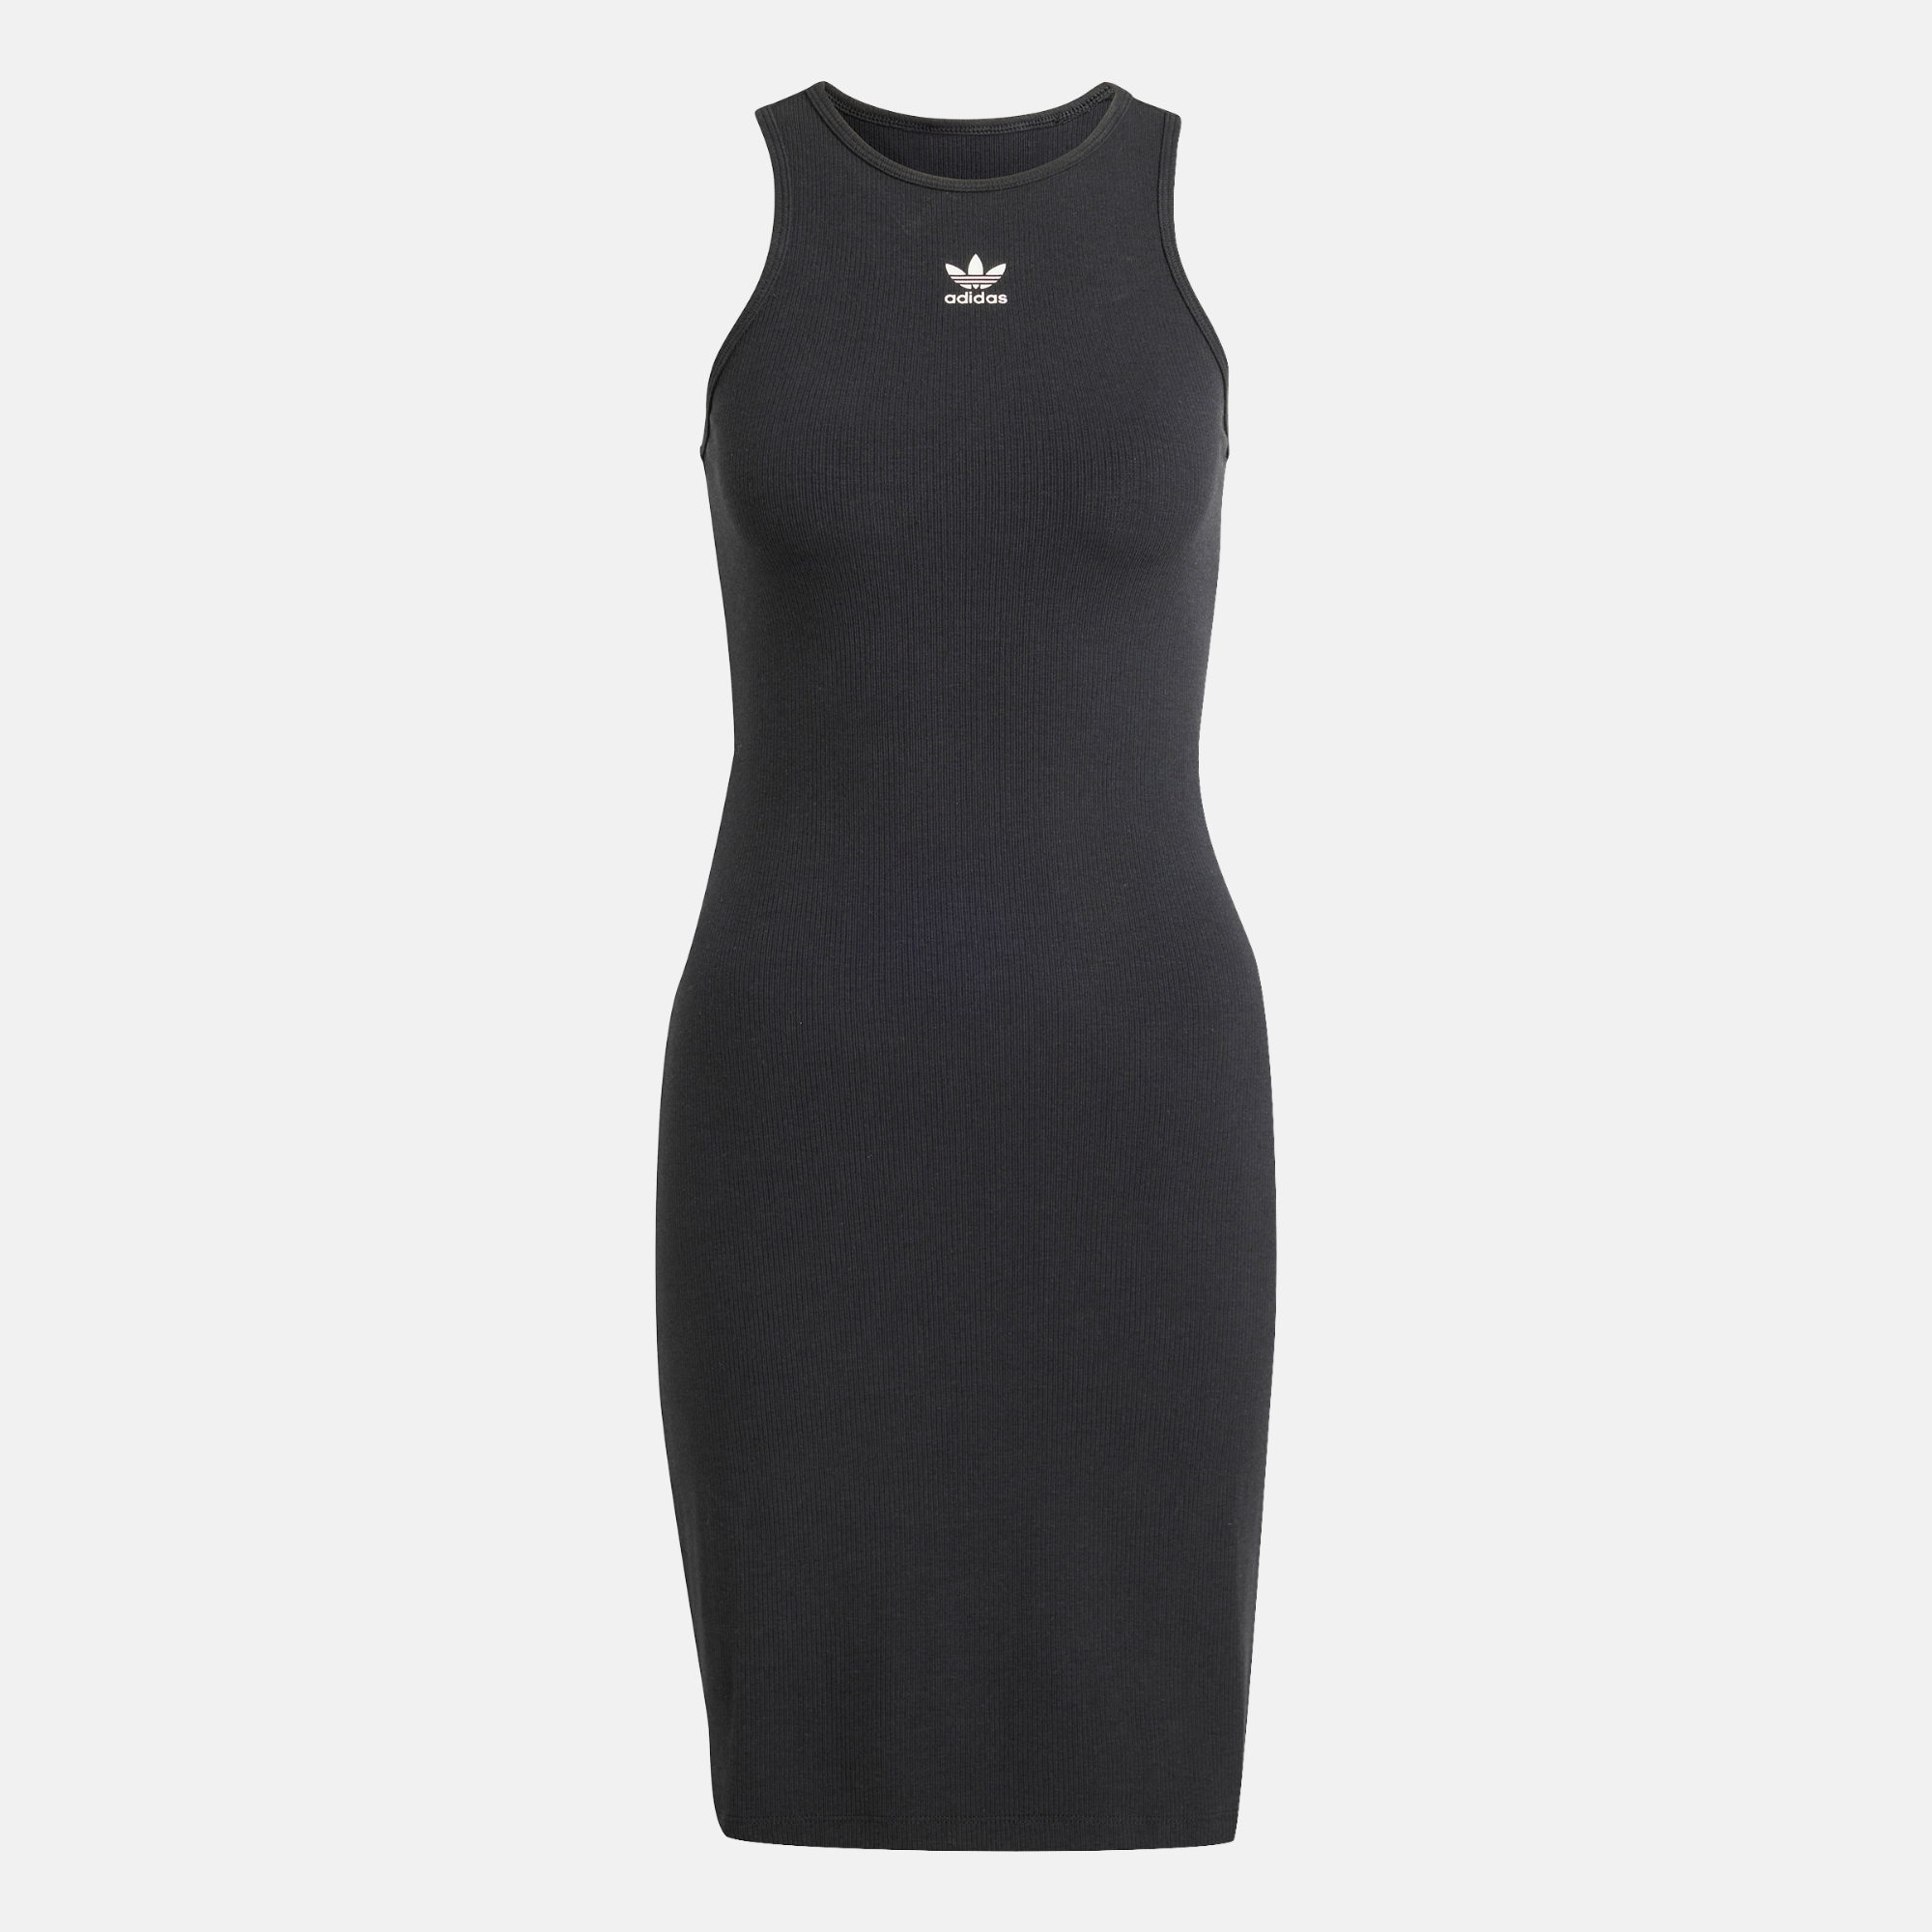 Adidas Women's Essentials Black Rib Tank Dress